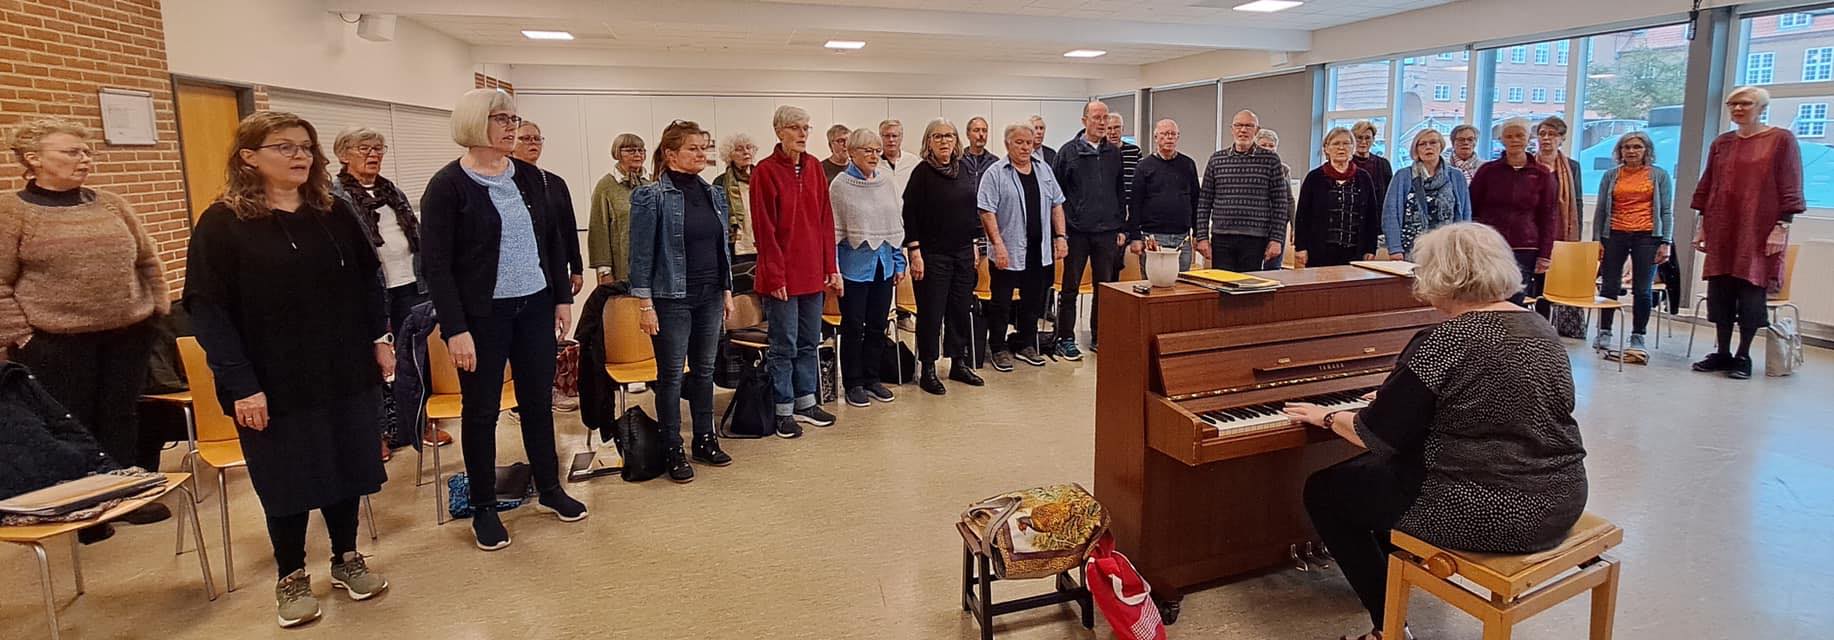 FOF Sønderjylland Haderslev lærerkor kor synger foran klaverspiller